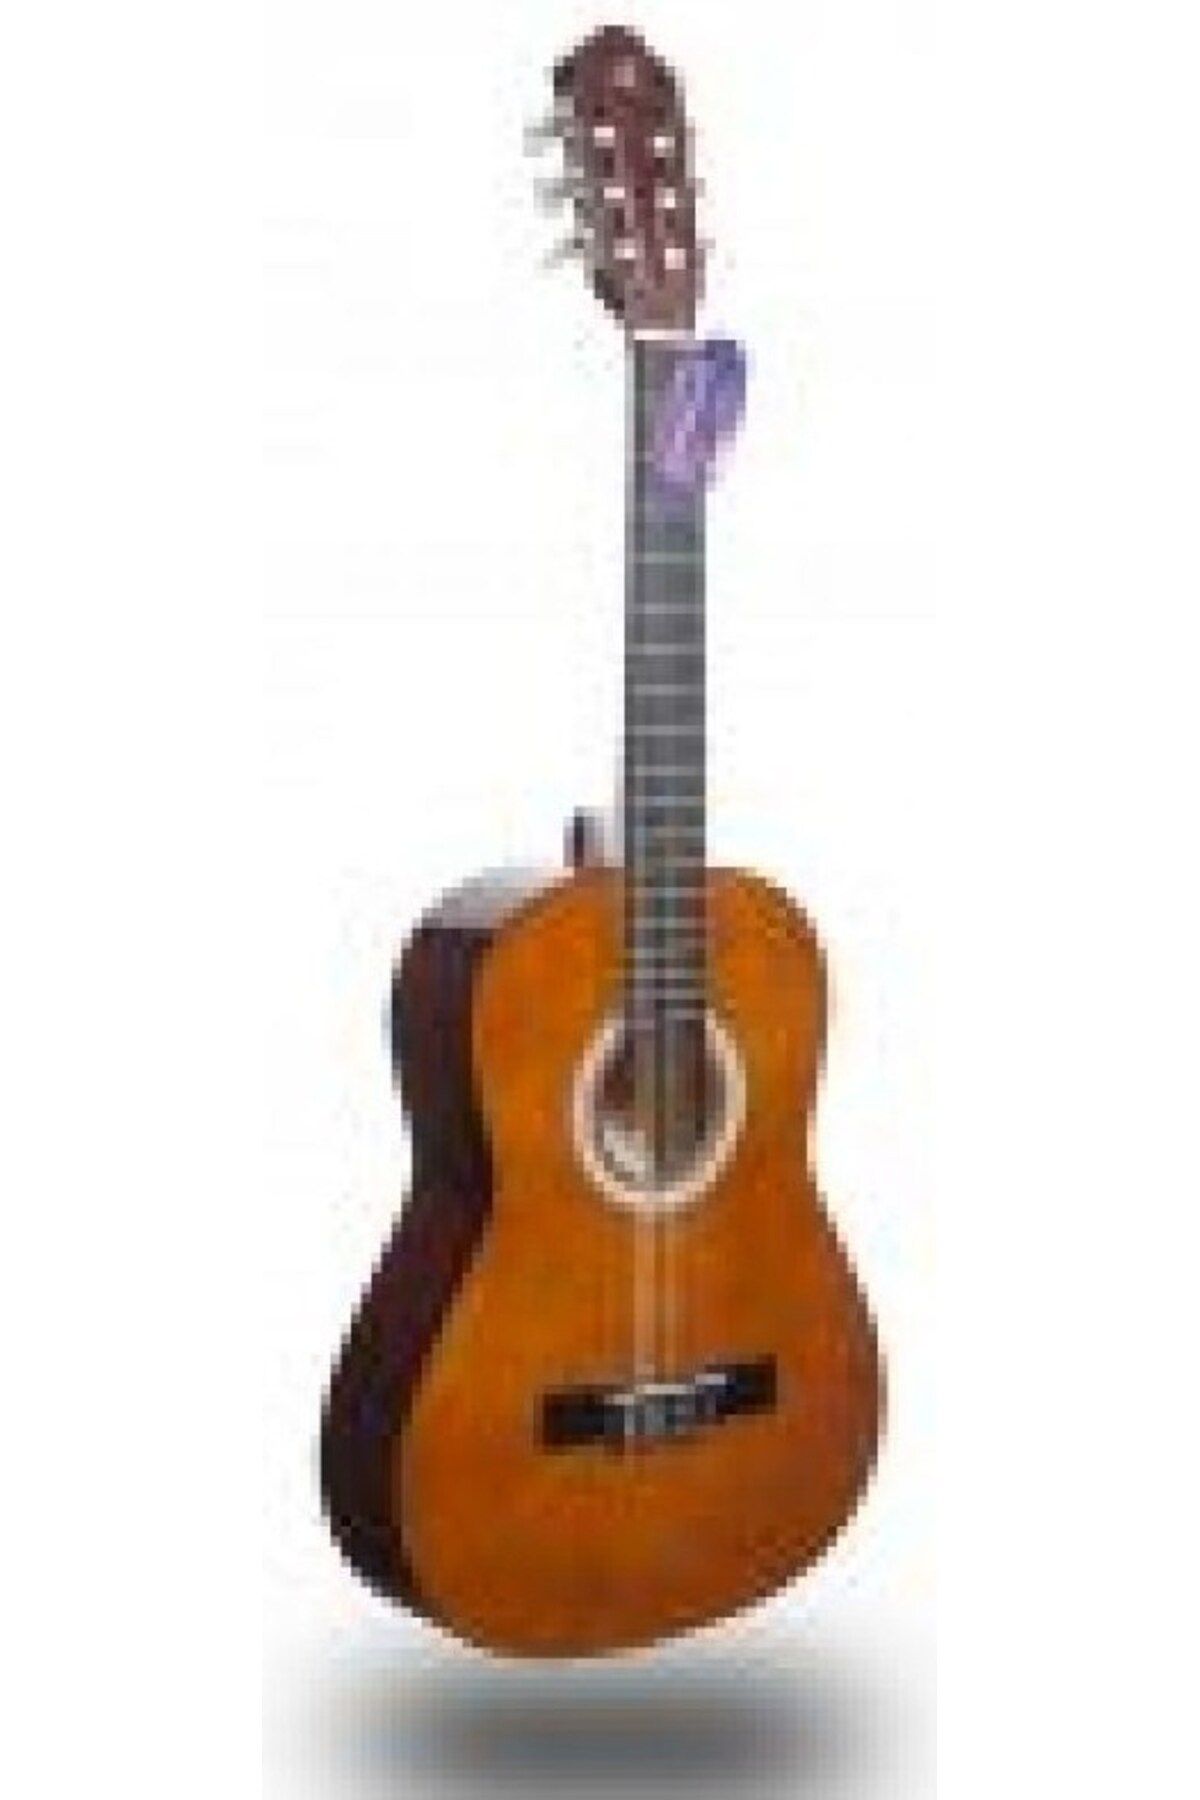 Barcelona Klasik Gitar - Lc 3900 Or